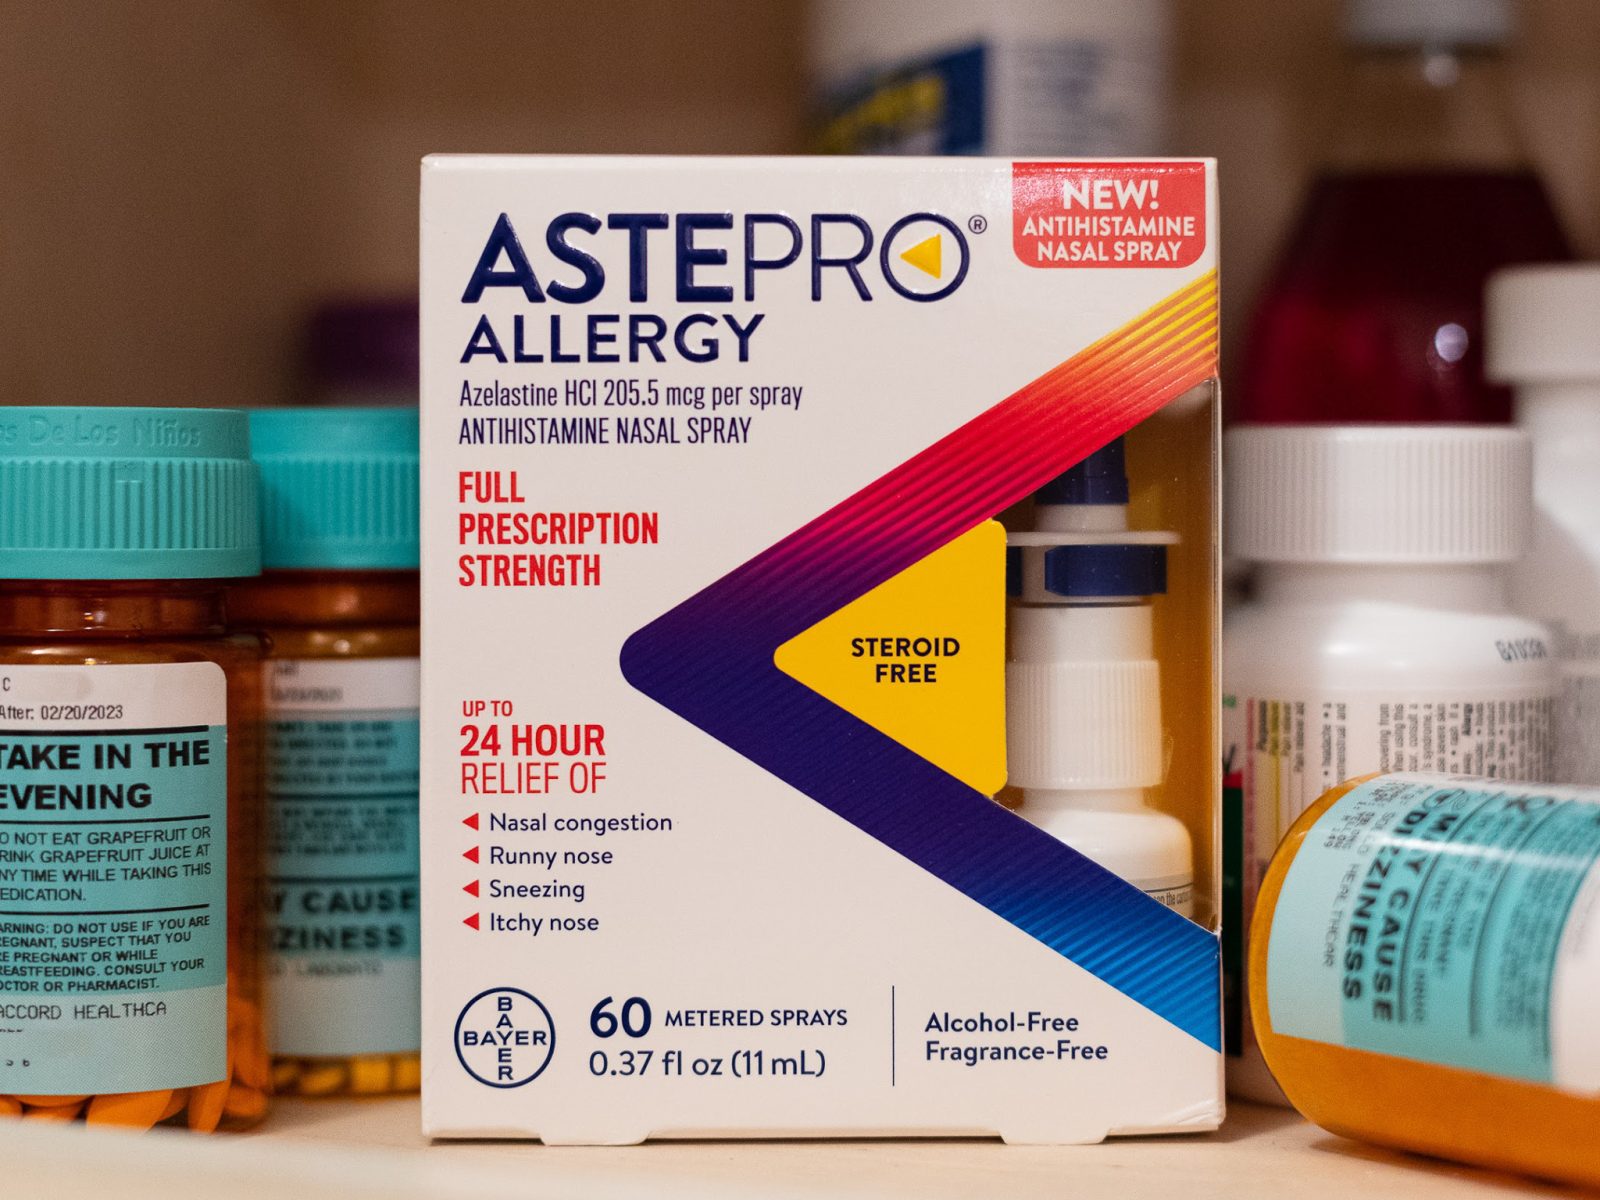 AstePro Allergy Nasal Spray Just $3.25 At Kroger (Regular Price $17.99)